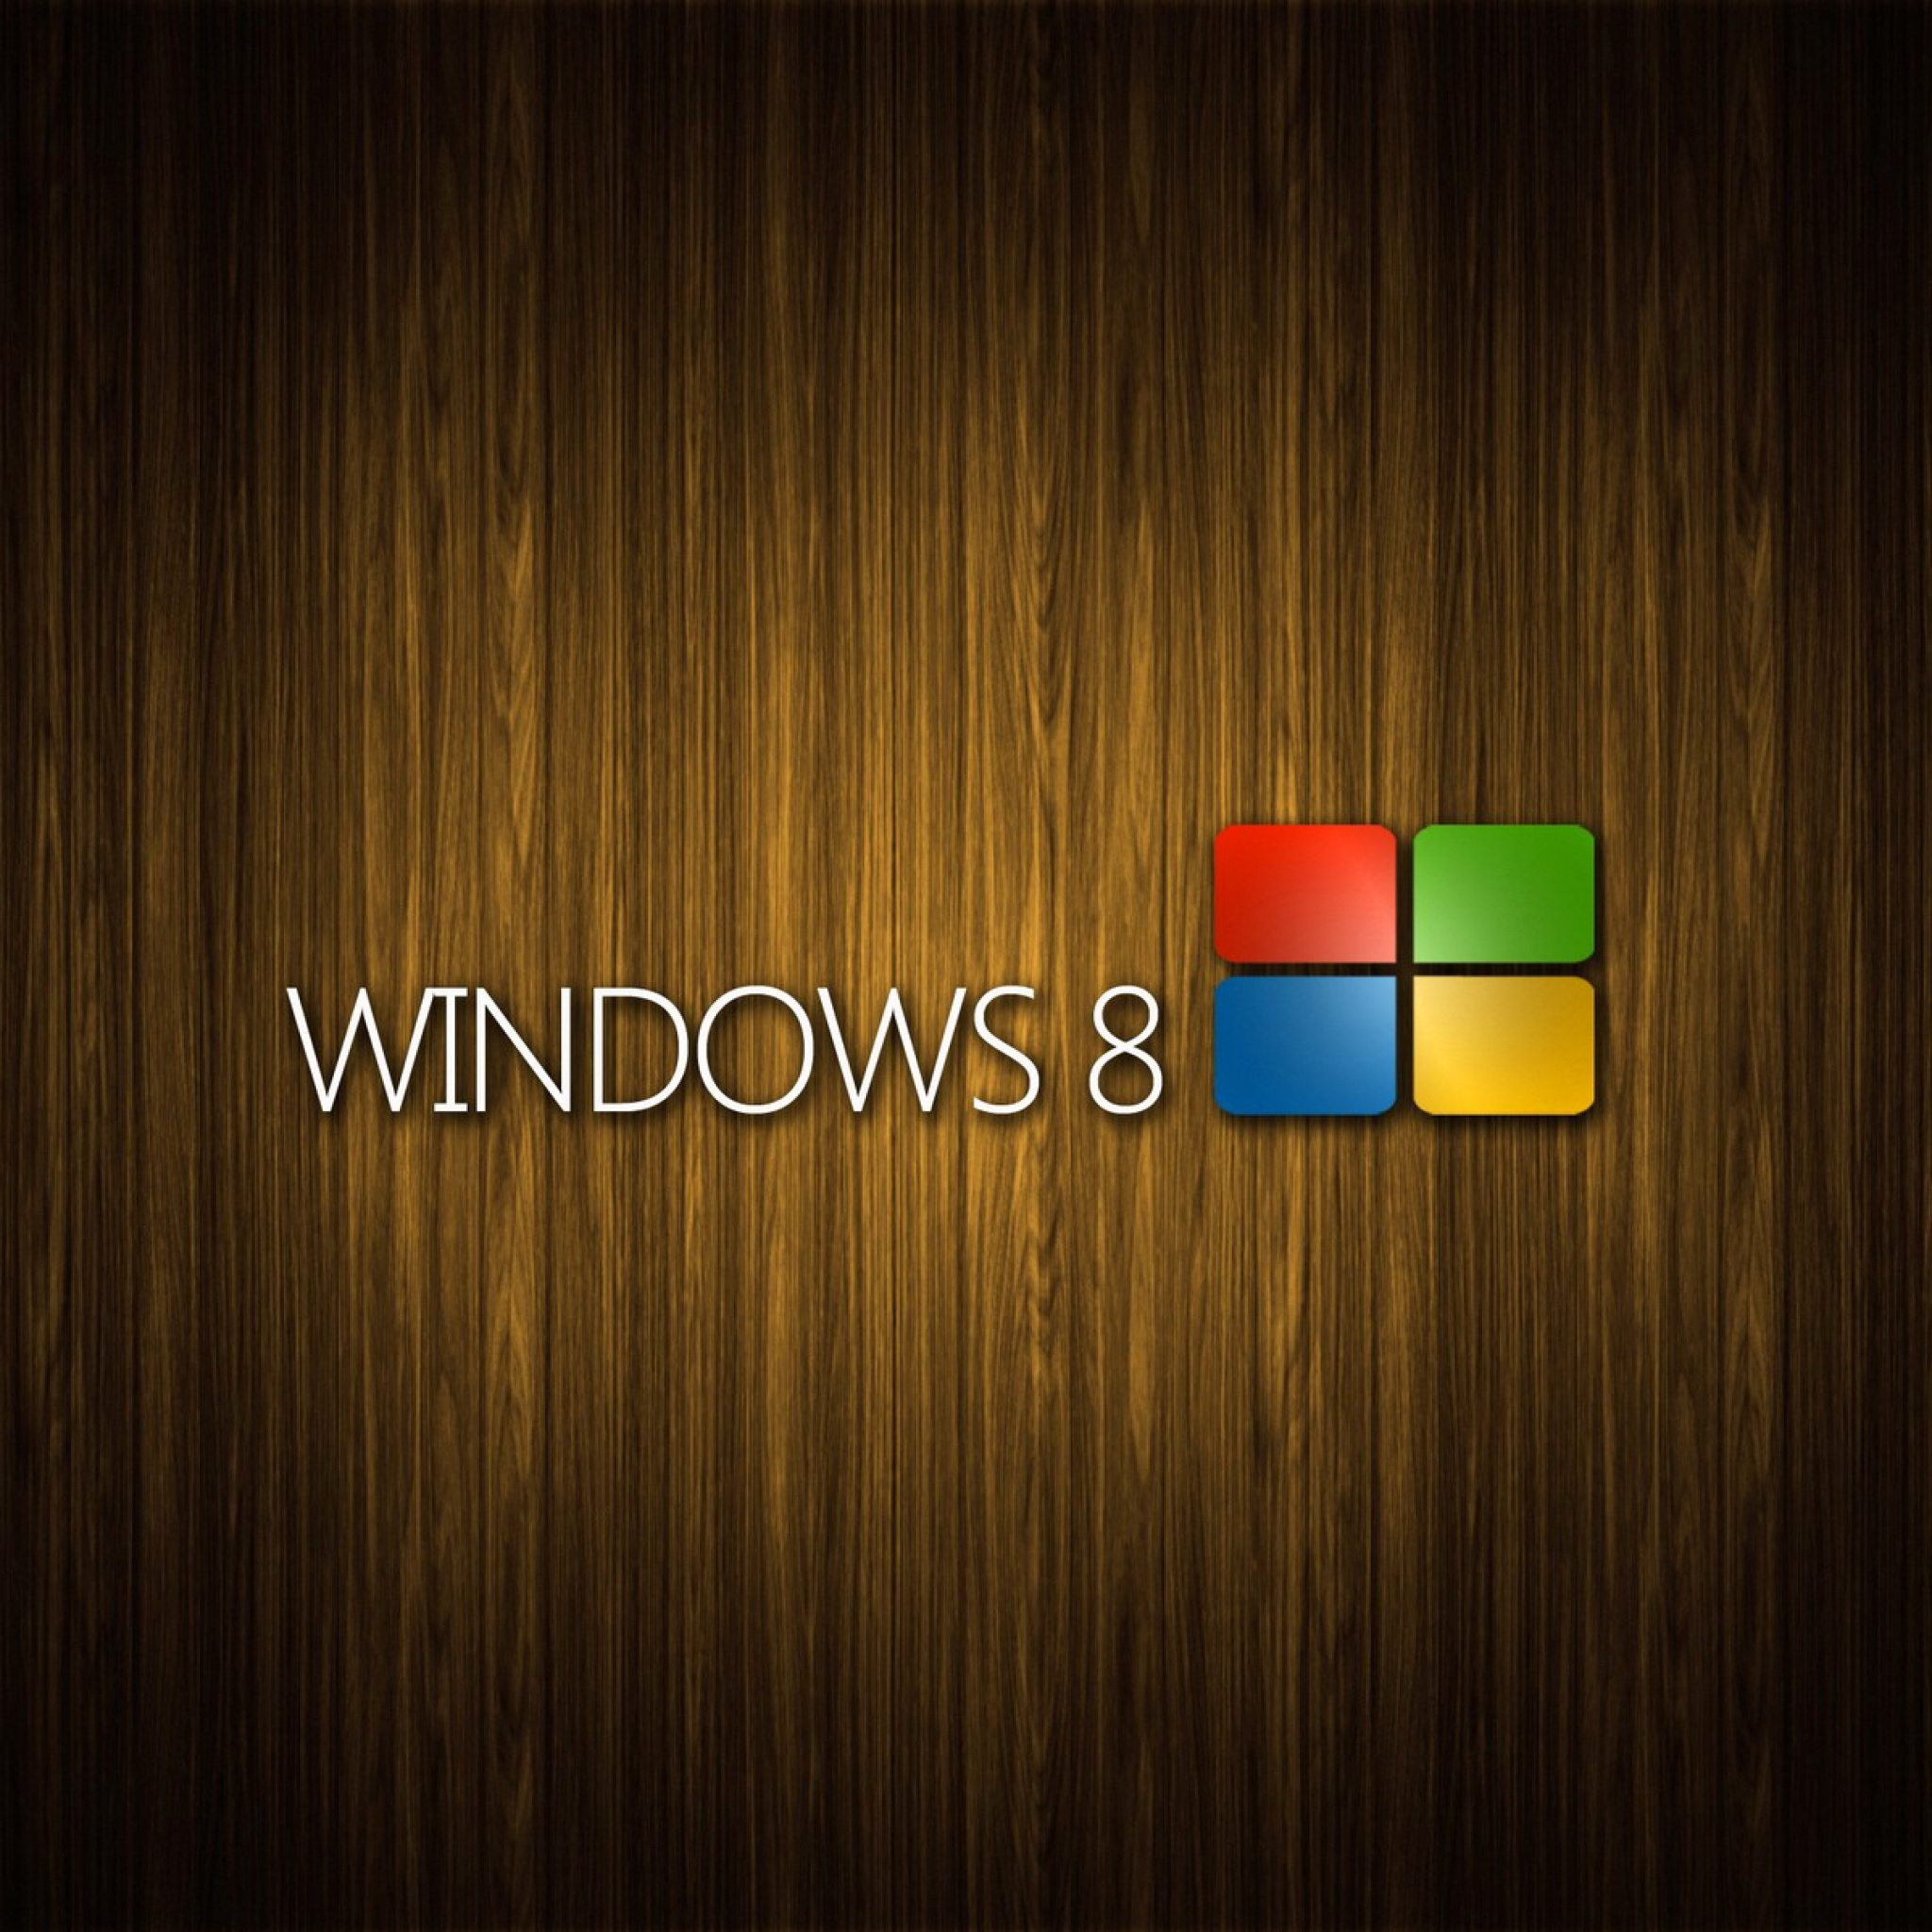 Обои Windows 8 Wooden Emblem 2048x2048